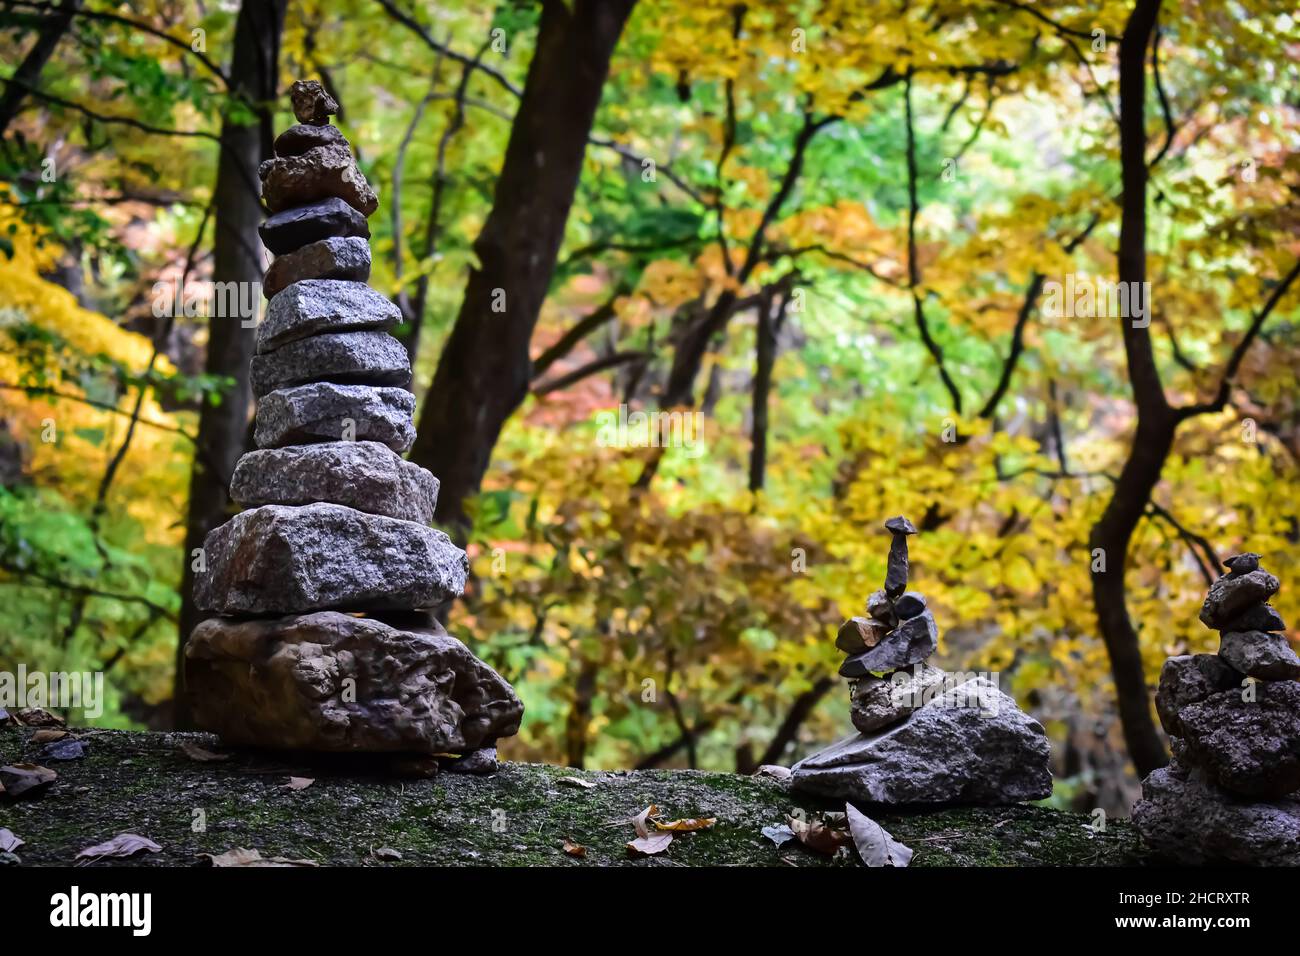 Piedras apiladas frente a árboles cambiando los colores de la temporada de otoño Foto de stock